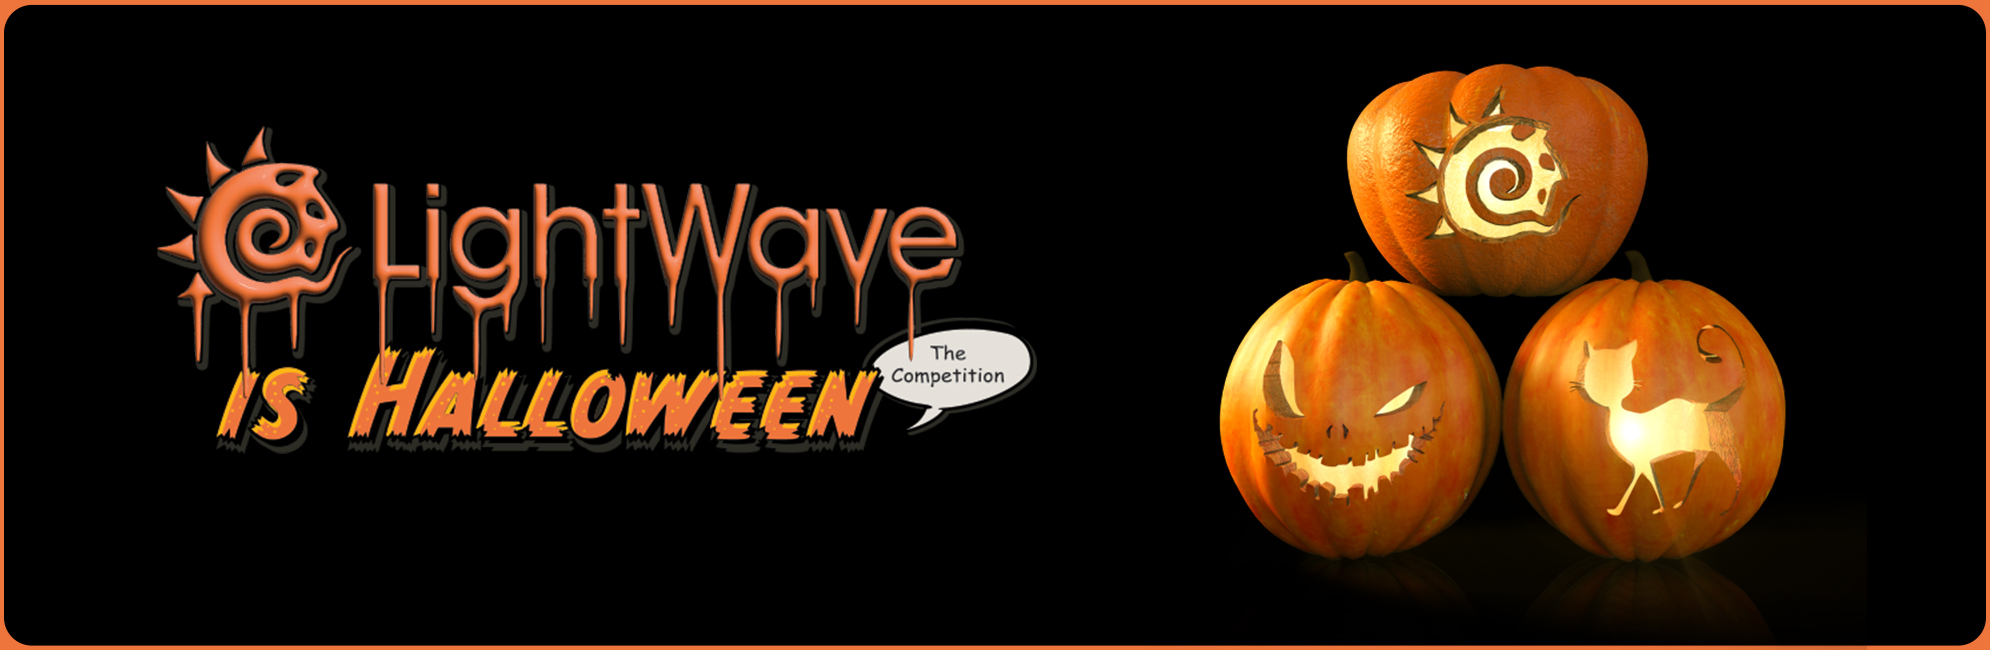 Nome: LightWave is Halloween  LightWave 3D Promo 20320918.jpg
Visite: 145
Dimensione: 387.4 KB